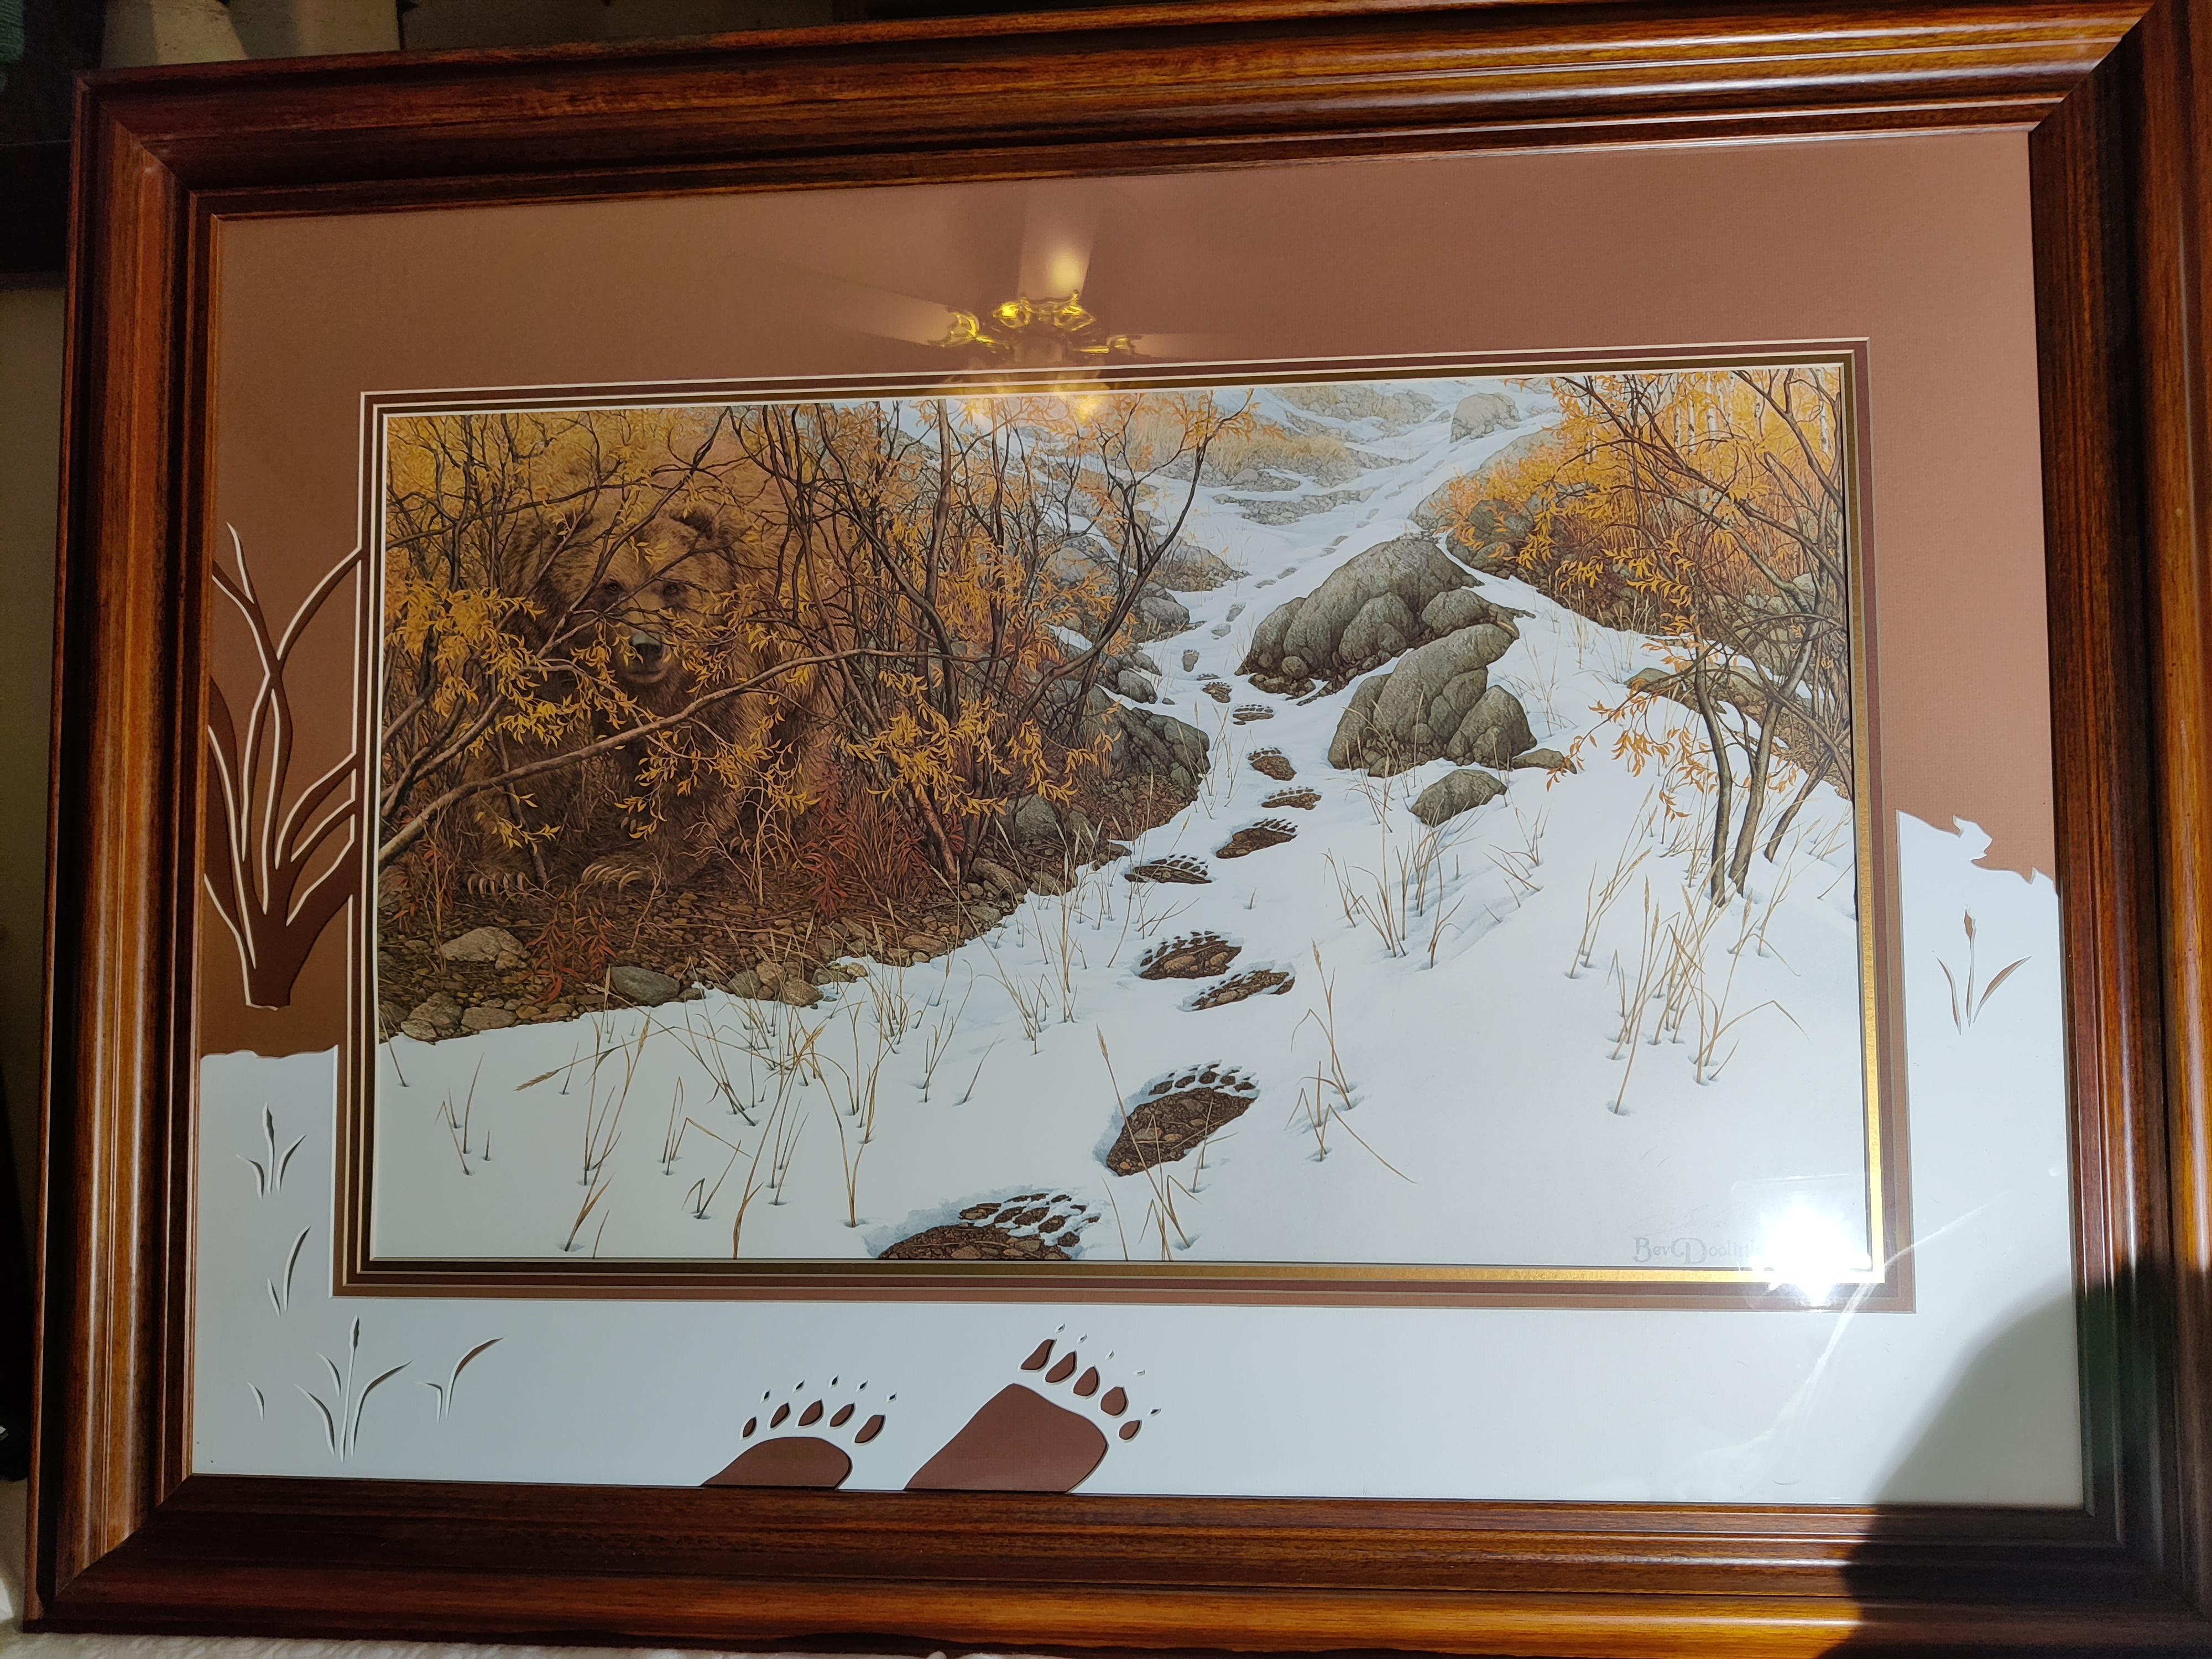 Impression « Doubleback » de Bev Doolittle signée et numérotée
5531/15000
Ours de camouflage caché dans l'image. 
Triple passe-partout avec une découpe haut de gamme très inhabituelle qui prolonge la neige, l'empreinte de l'ours, les plantes et